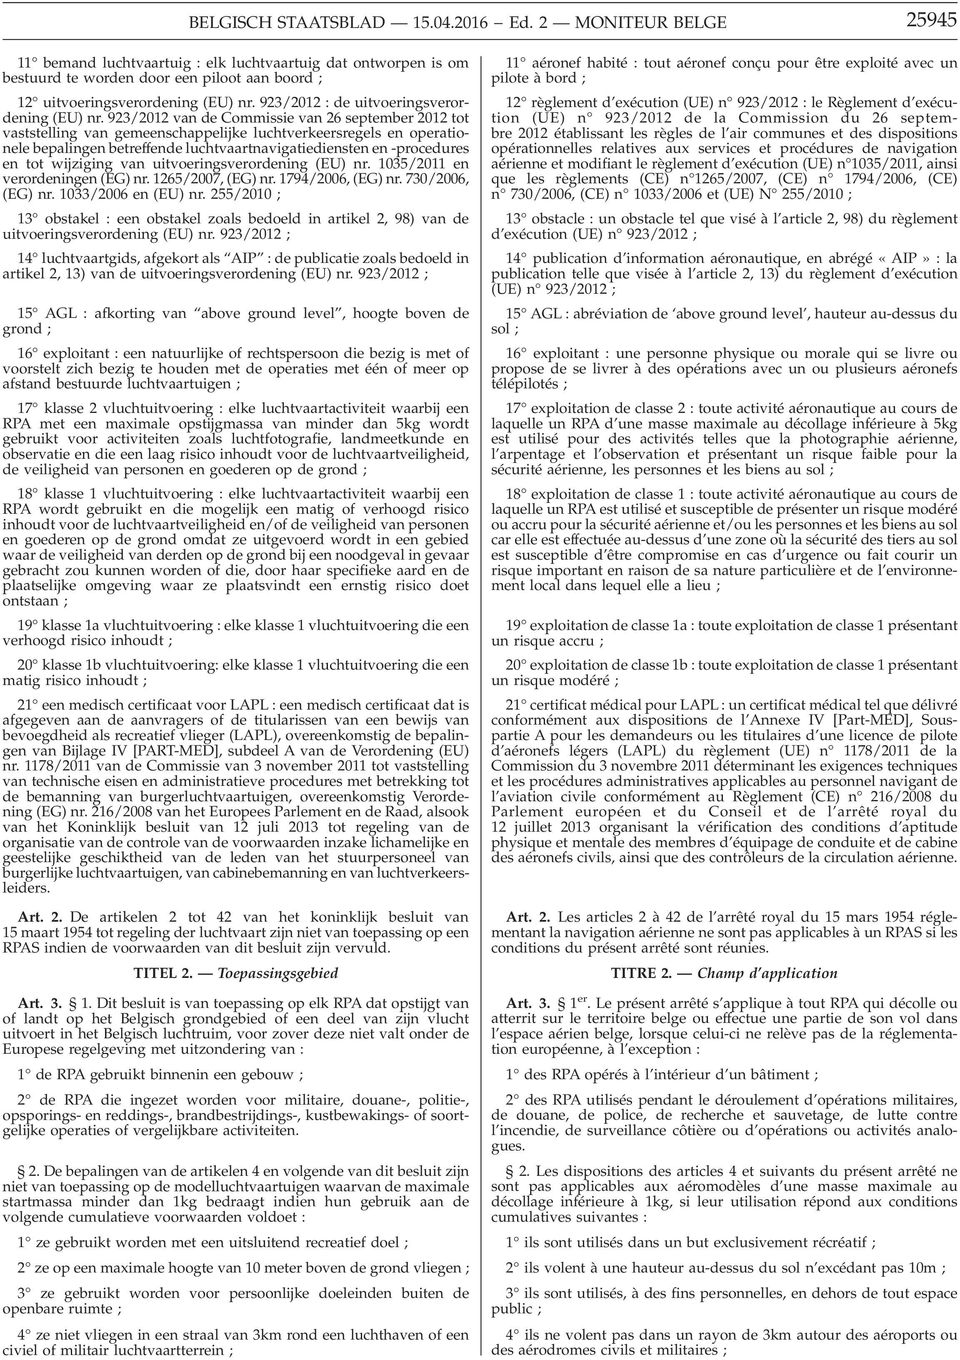 923/2012 : de uitvoeringsverordening (EU) nr.